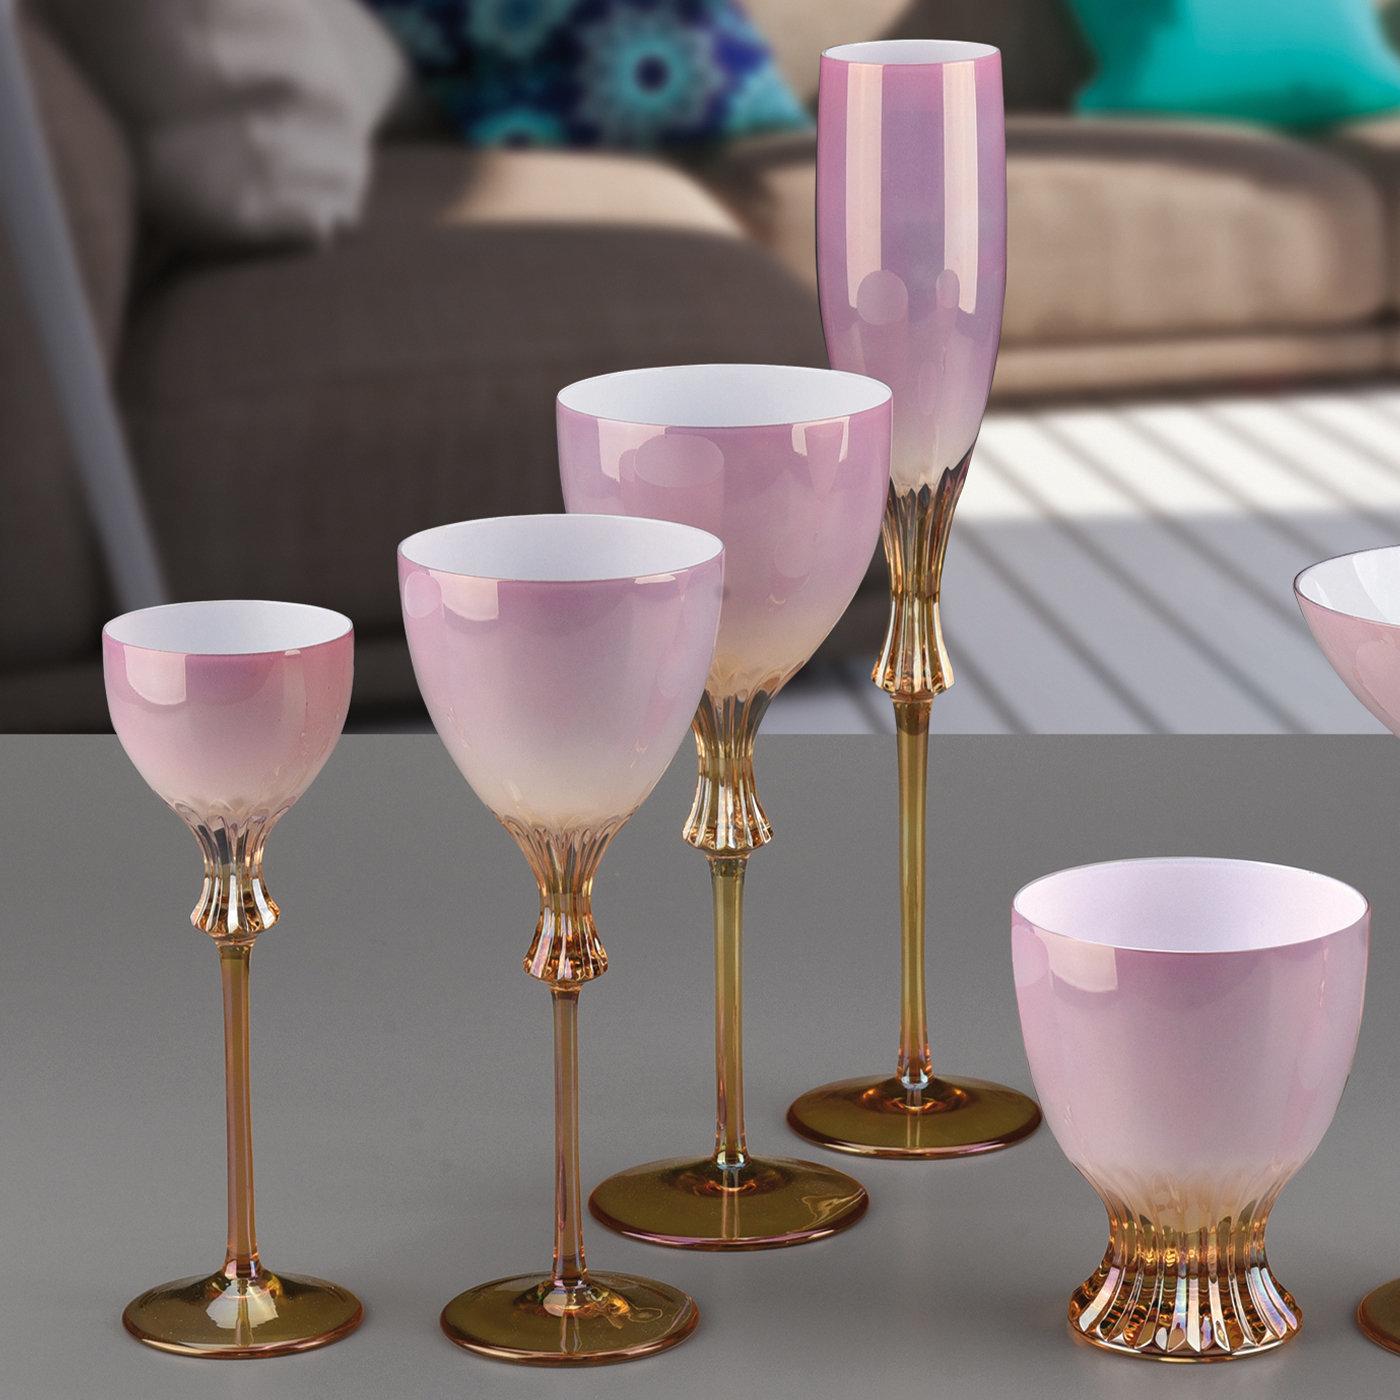 Dieses elegante Set besteht aus zwei Wassergläsern, zwei Weingläsern und zwei Flöten, die einem eleganten Esstisch einen großzügigen und anmutigen romantischen Akzent verleihen. Jedes Stück ist aus Kristall gefertigt und von Hand mit einer